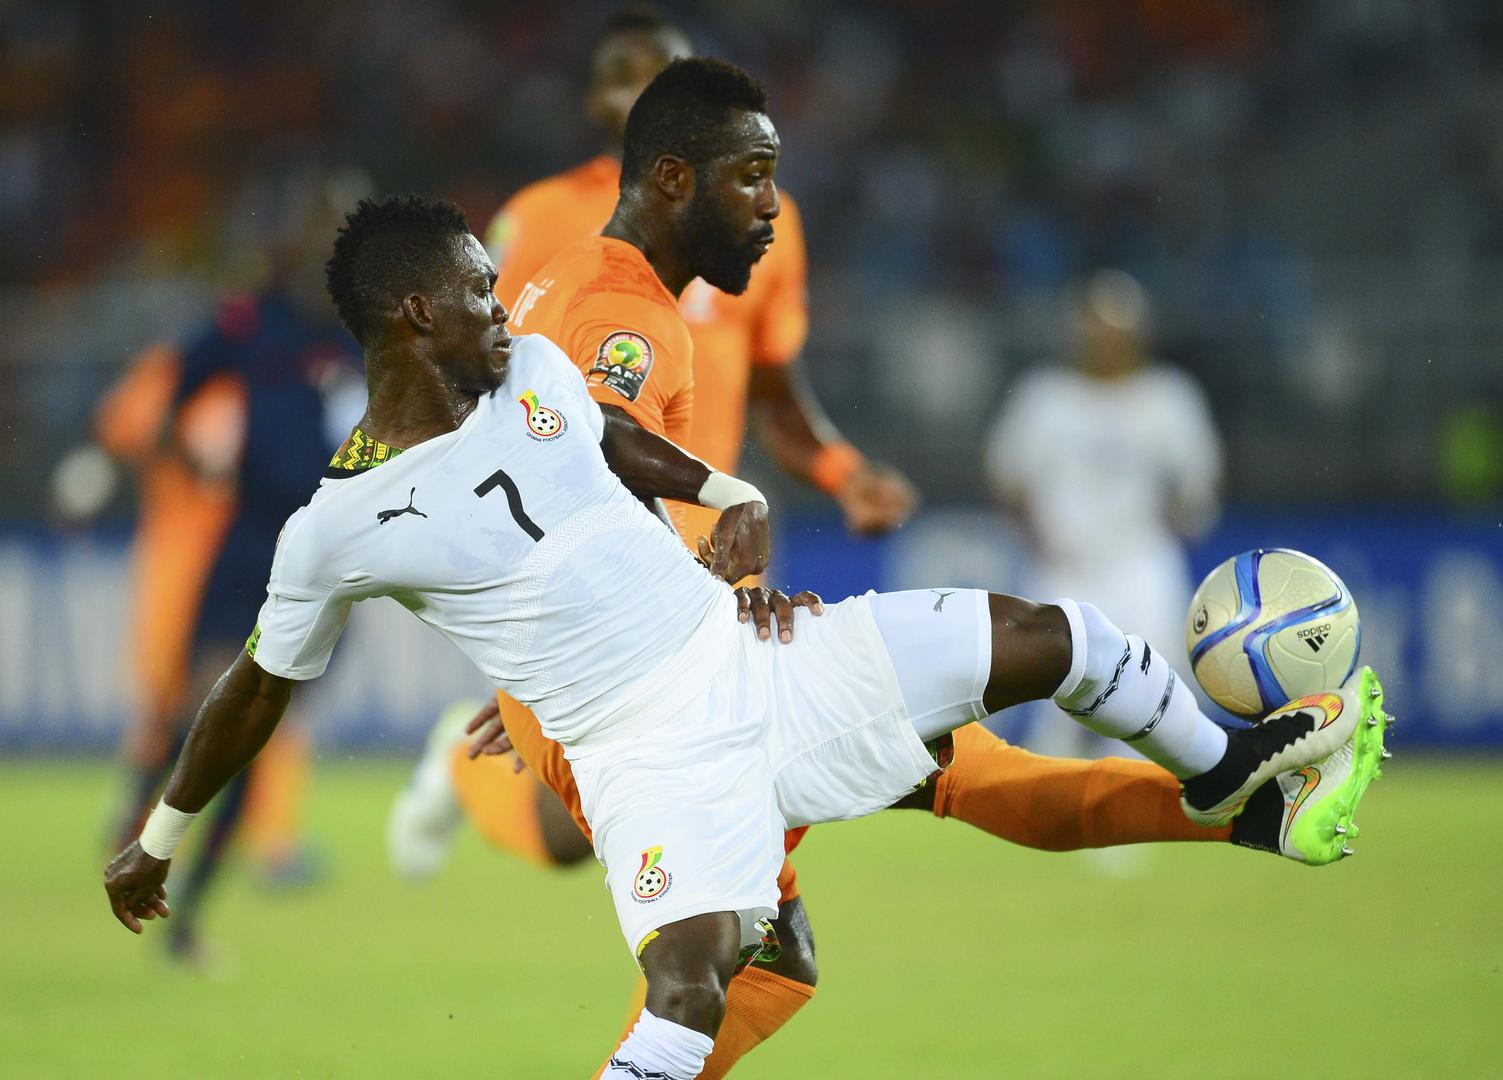 Popis afričkih razočaranja zaključuje Gana, koja nije uspjela parirati Egiptu te je završila na trećem mjestu sa čak šest bodova zaostatka. 